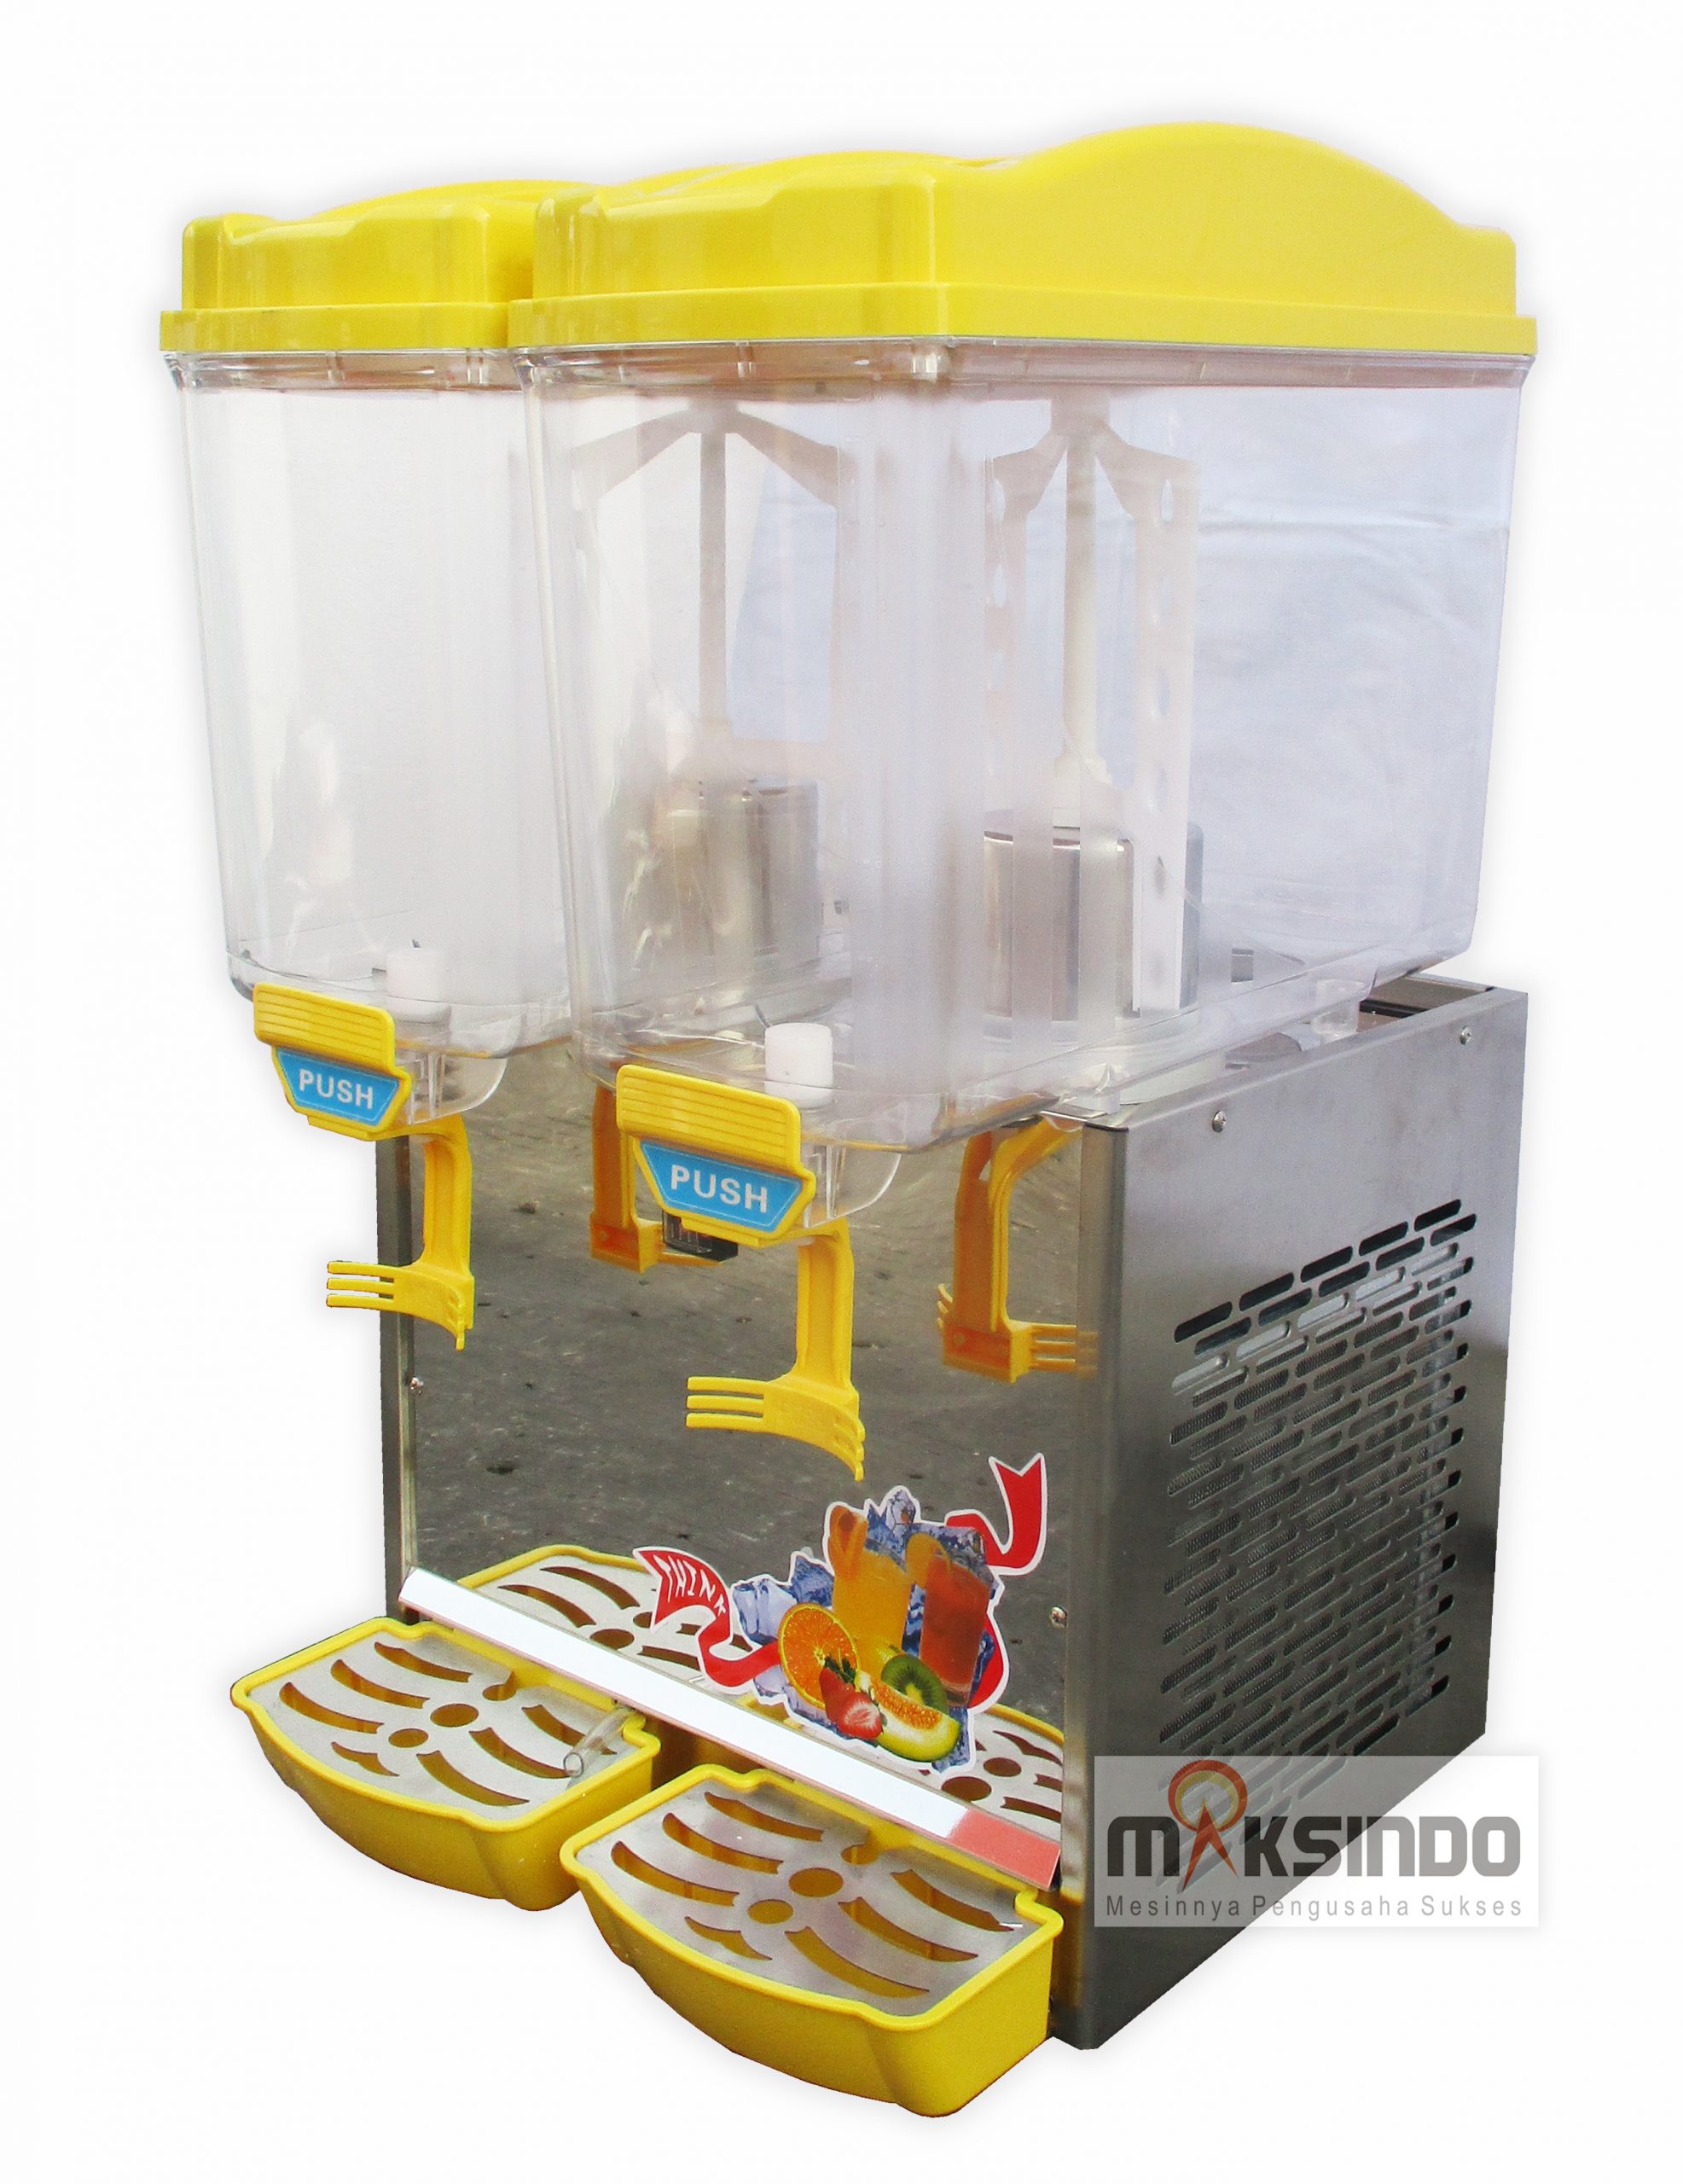 Jual Juice Dispenser 2 Tabung (17 Liter) – ADK17x2 di Banjarmasin